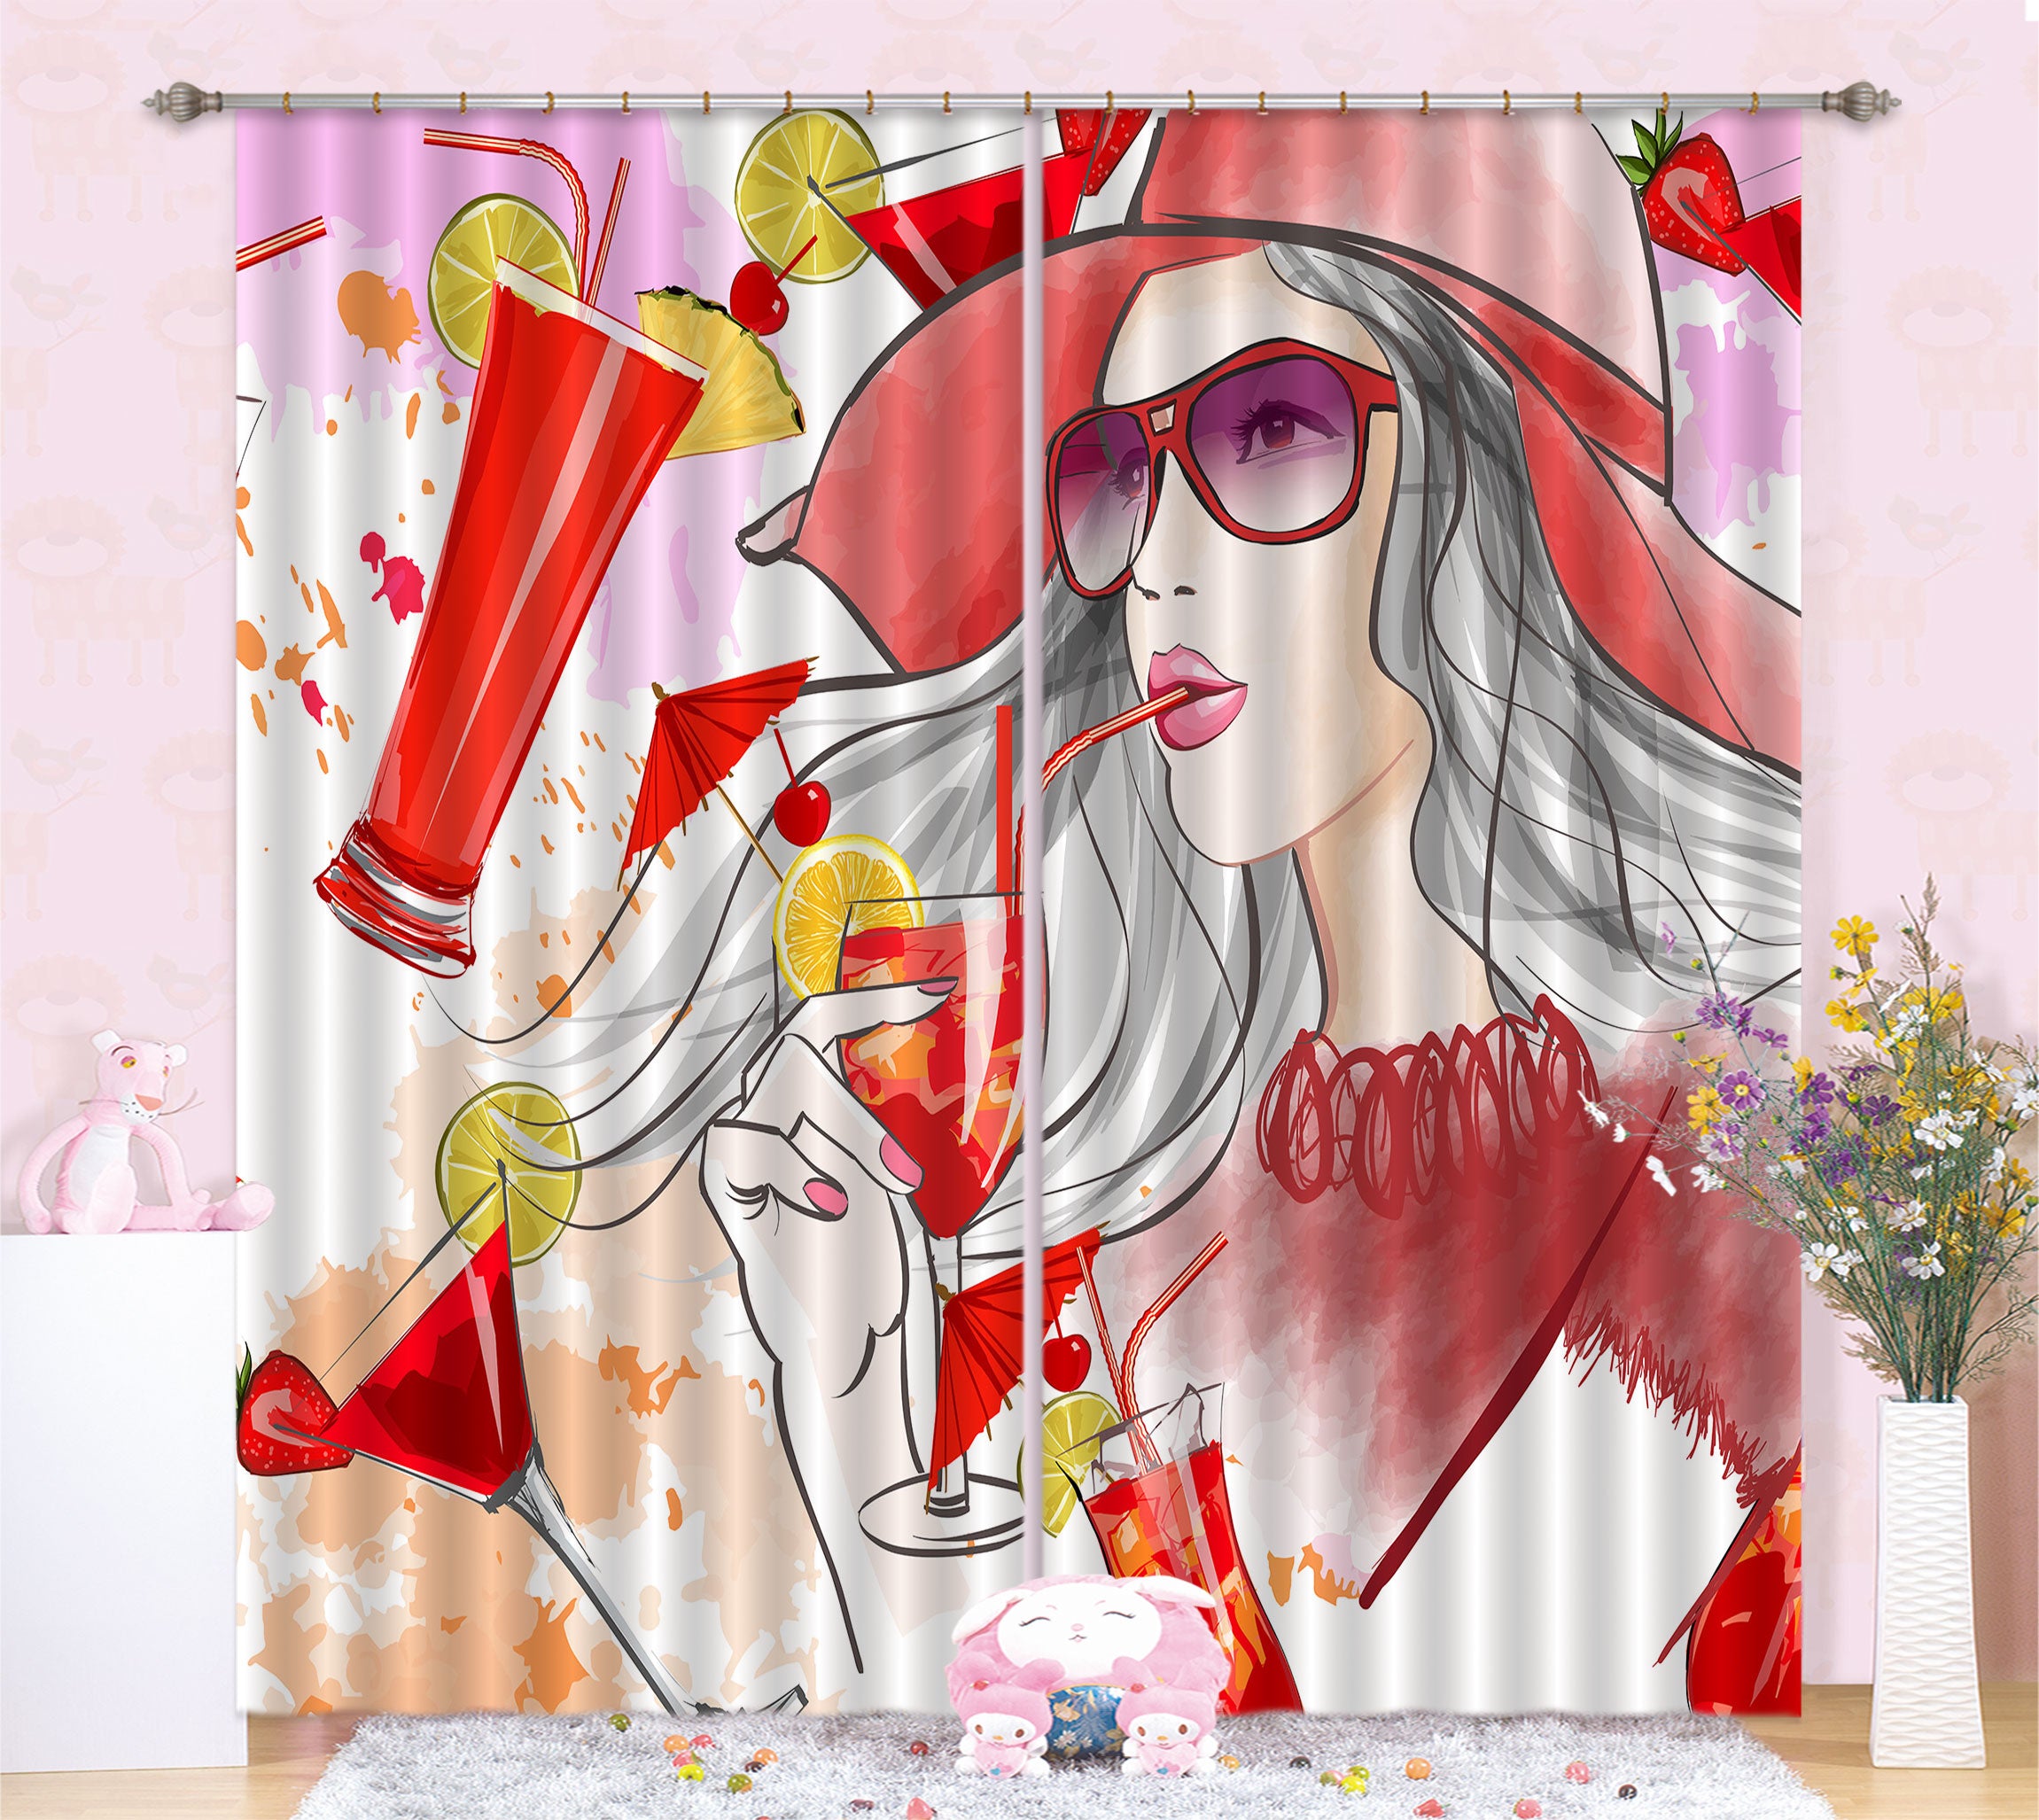 3D Lemon Drink Woman 036 Curtains Drapes